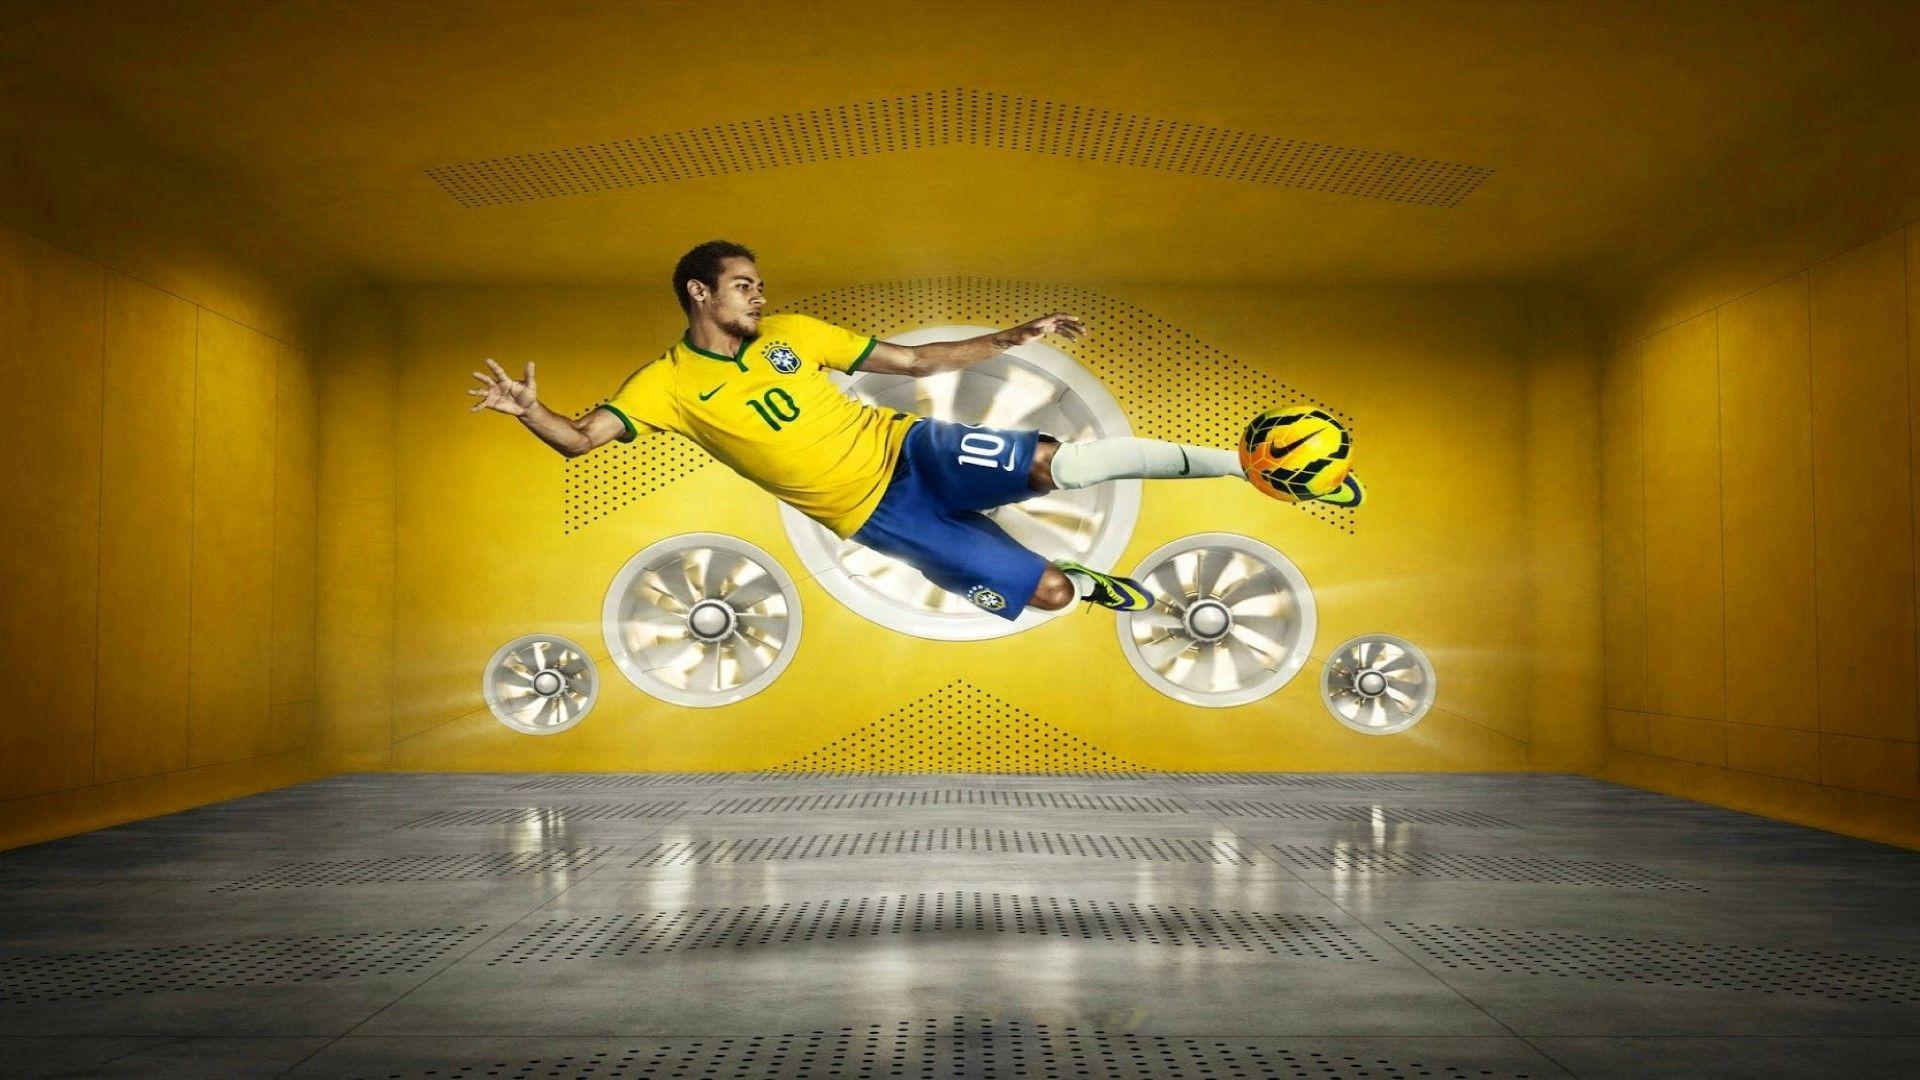 Fifa World Cup Brazil 2014 Neymar Photo Wallpaper. CuteHDWall